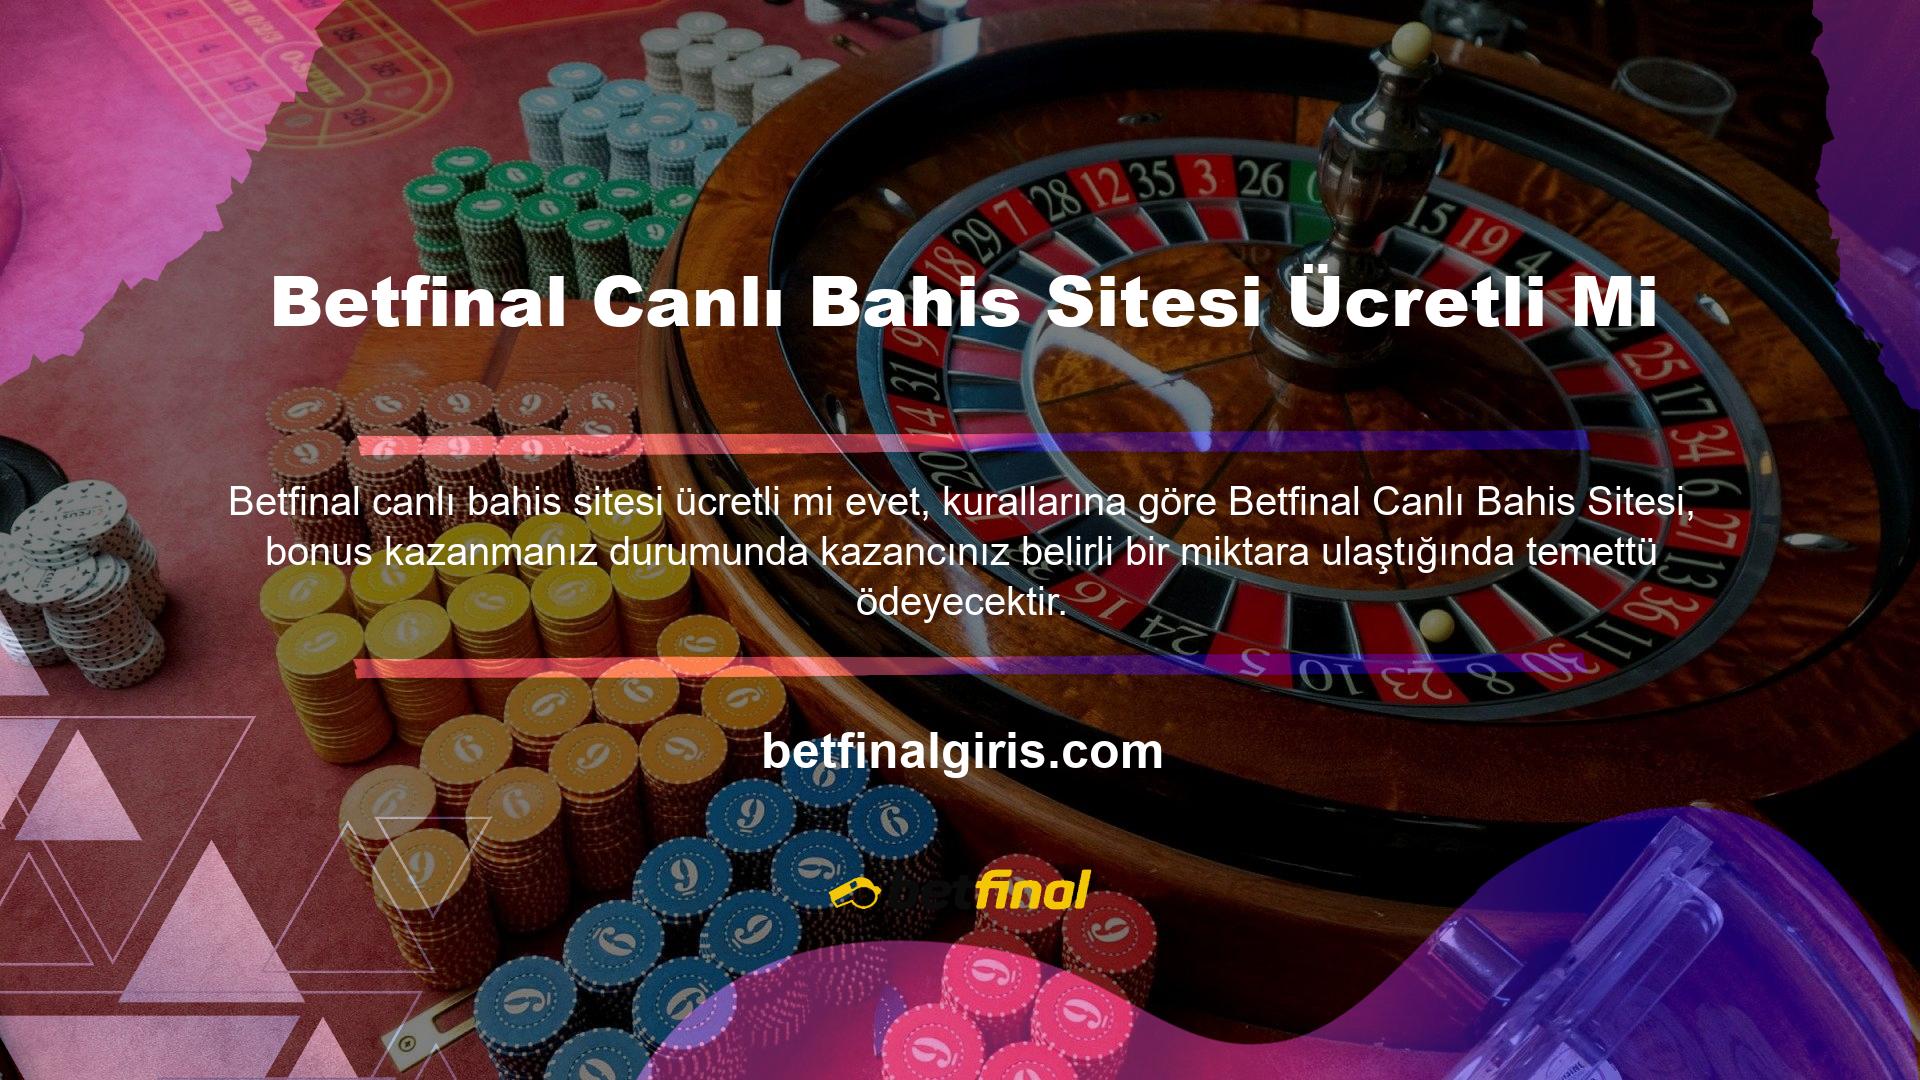 Betfinal Canlı Bahis Sitesi Ücretli mi? Canlı Casino ve Oyun Sitesi Türkiye'nin en popüler sitelerinden biridir